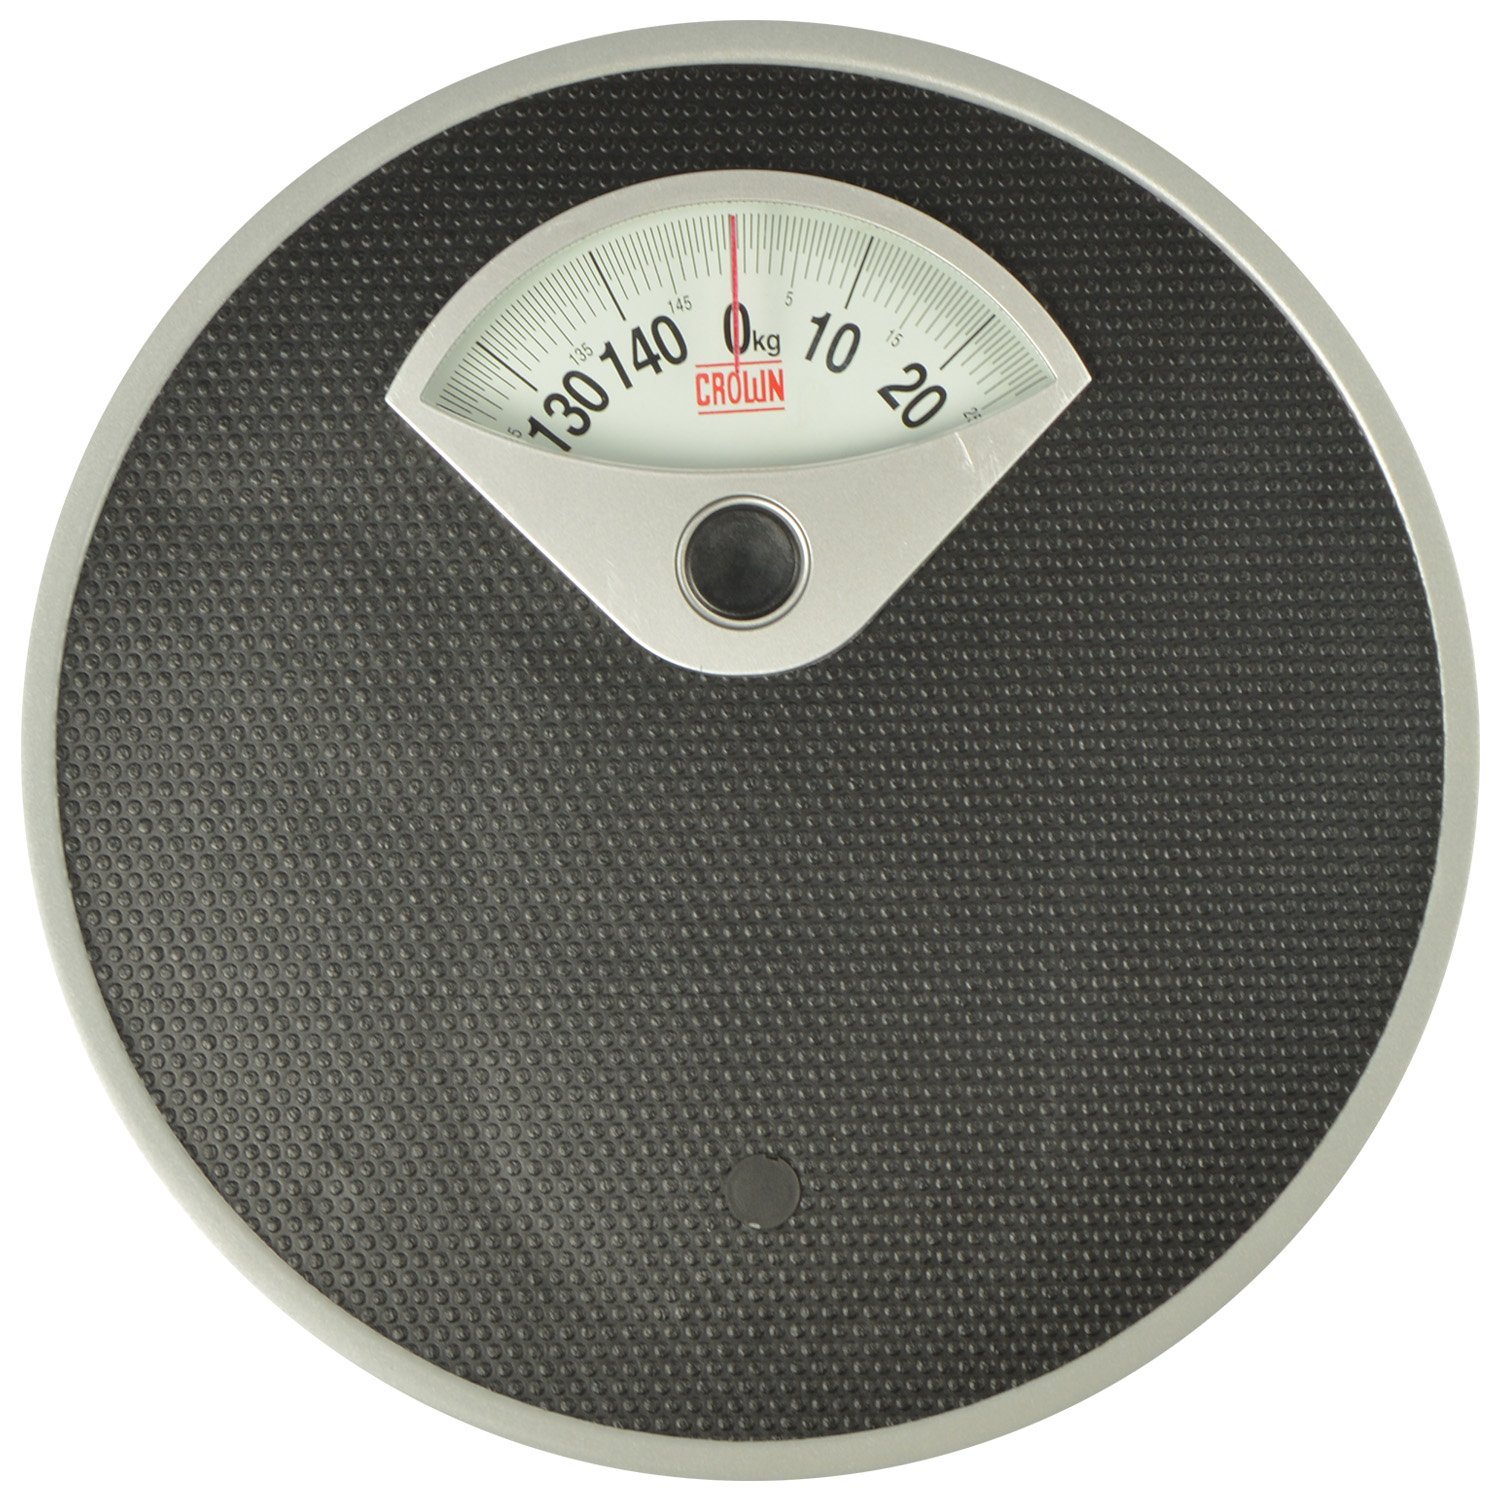 Crown Machenical Weigh Scale Unisex Weight Machine (Black) | Suraj ...